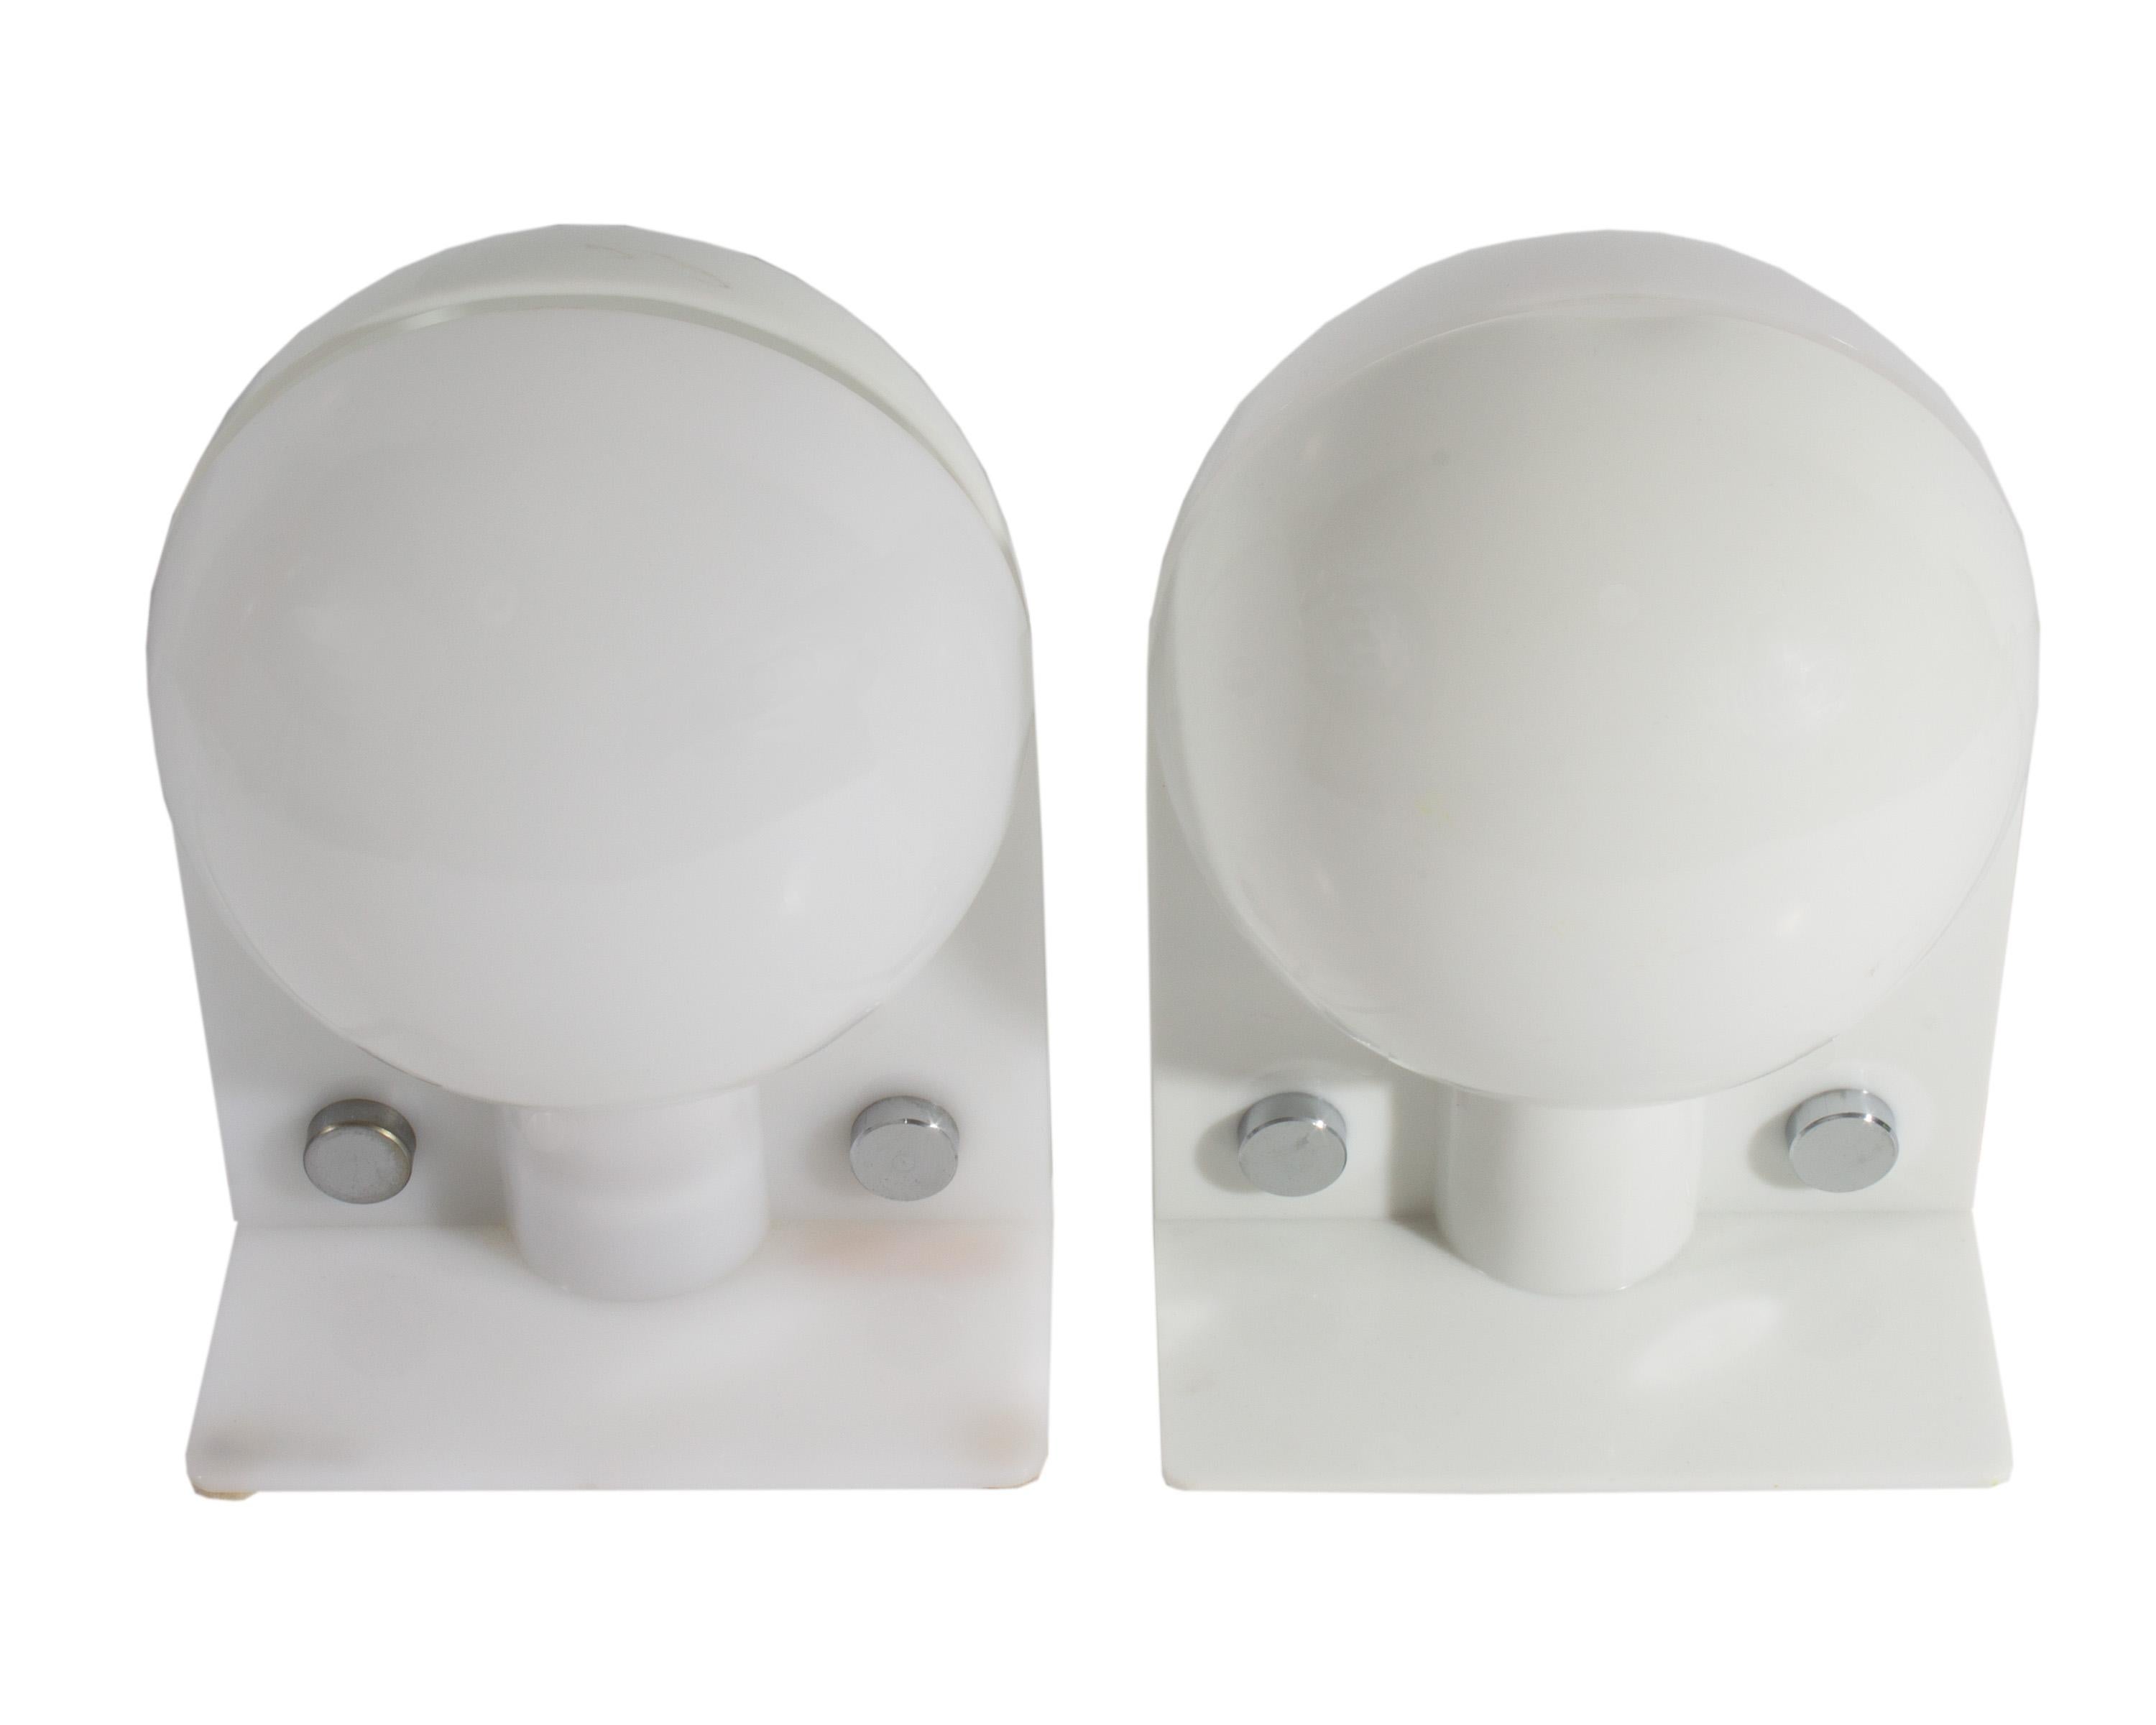 Paire de lampes de table en acrylique Sirio de l'ère spatiale, conçues par Ermanno Lampa et Sergio Brazzoli pour Harvey Guzzini. Fabriquées en Italie, ces lampes rondes blanches ont des accents argentés. Le design circulaire de la partie supérieure